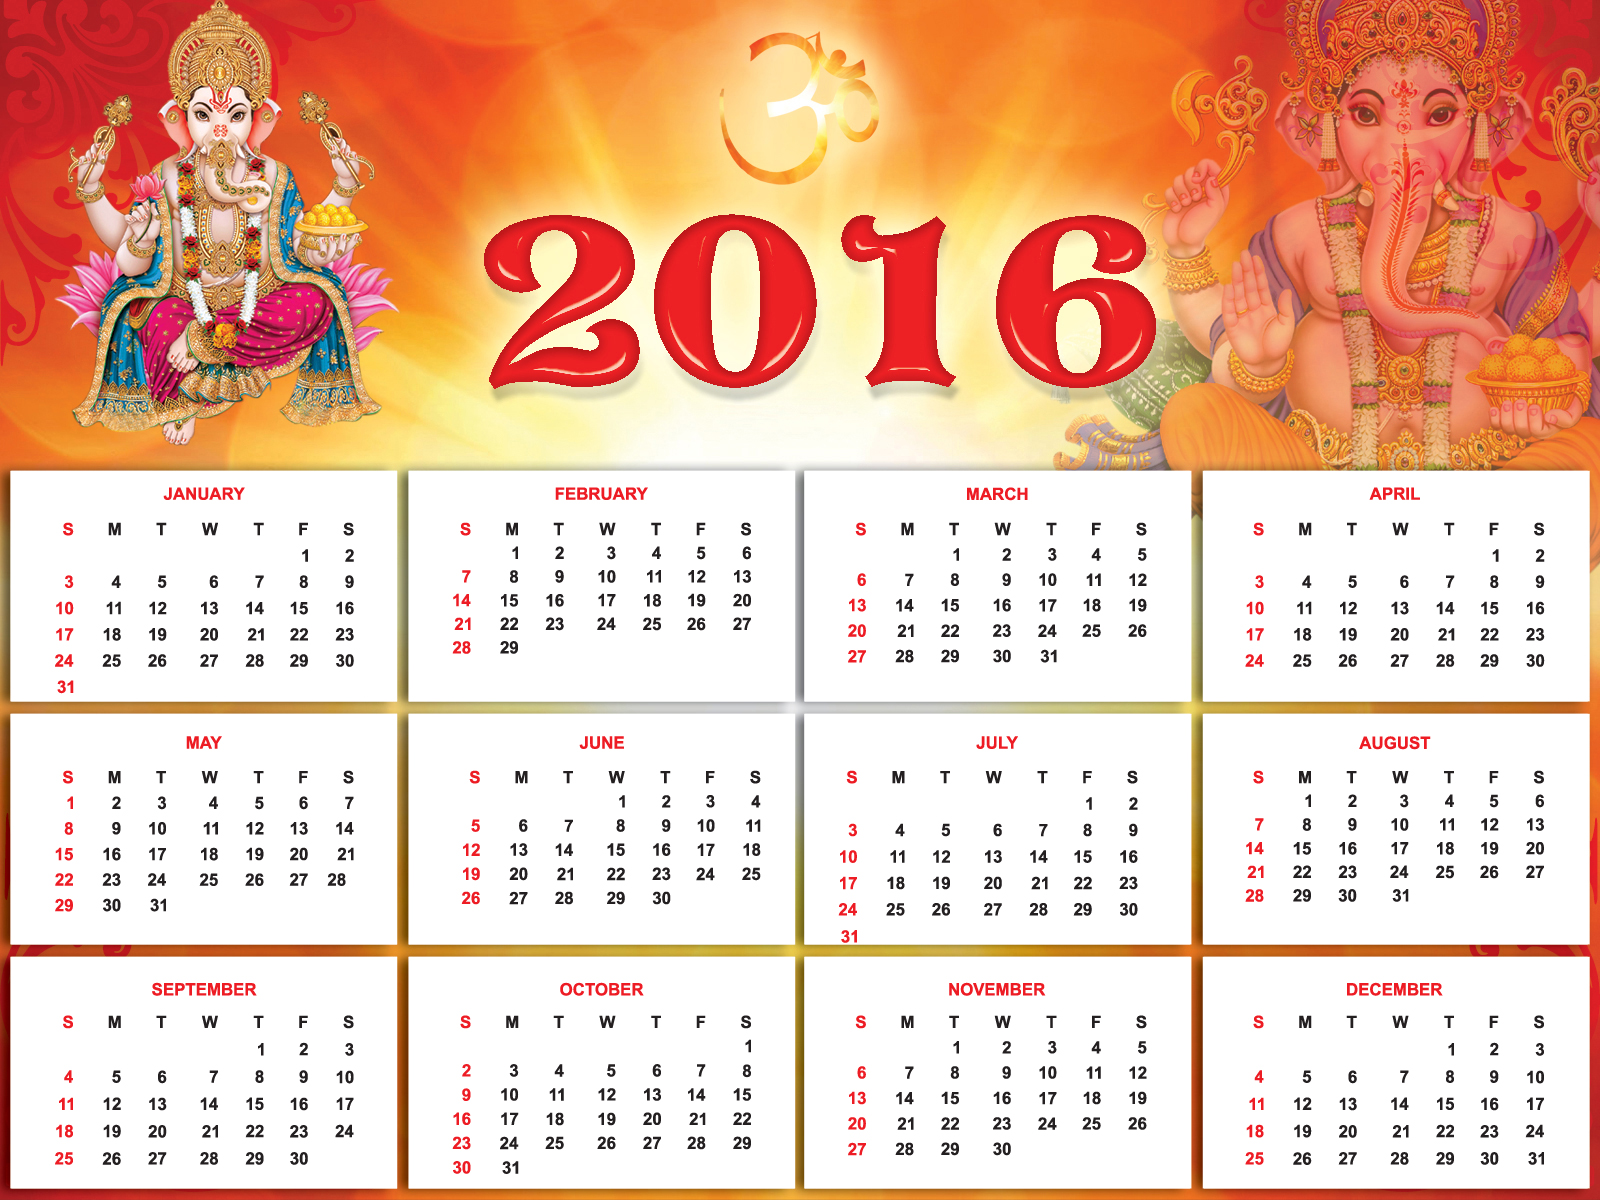 2016 Year Calendar Wallpaper Download 2016 Calendar by Month 1600x1200